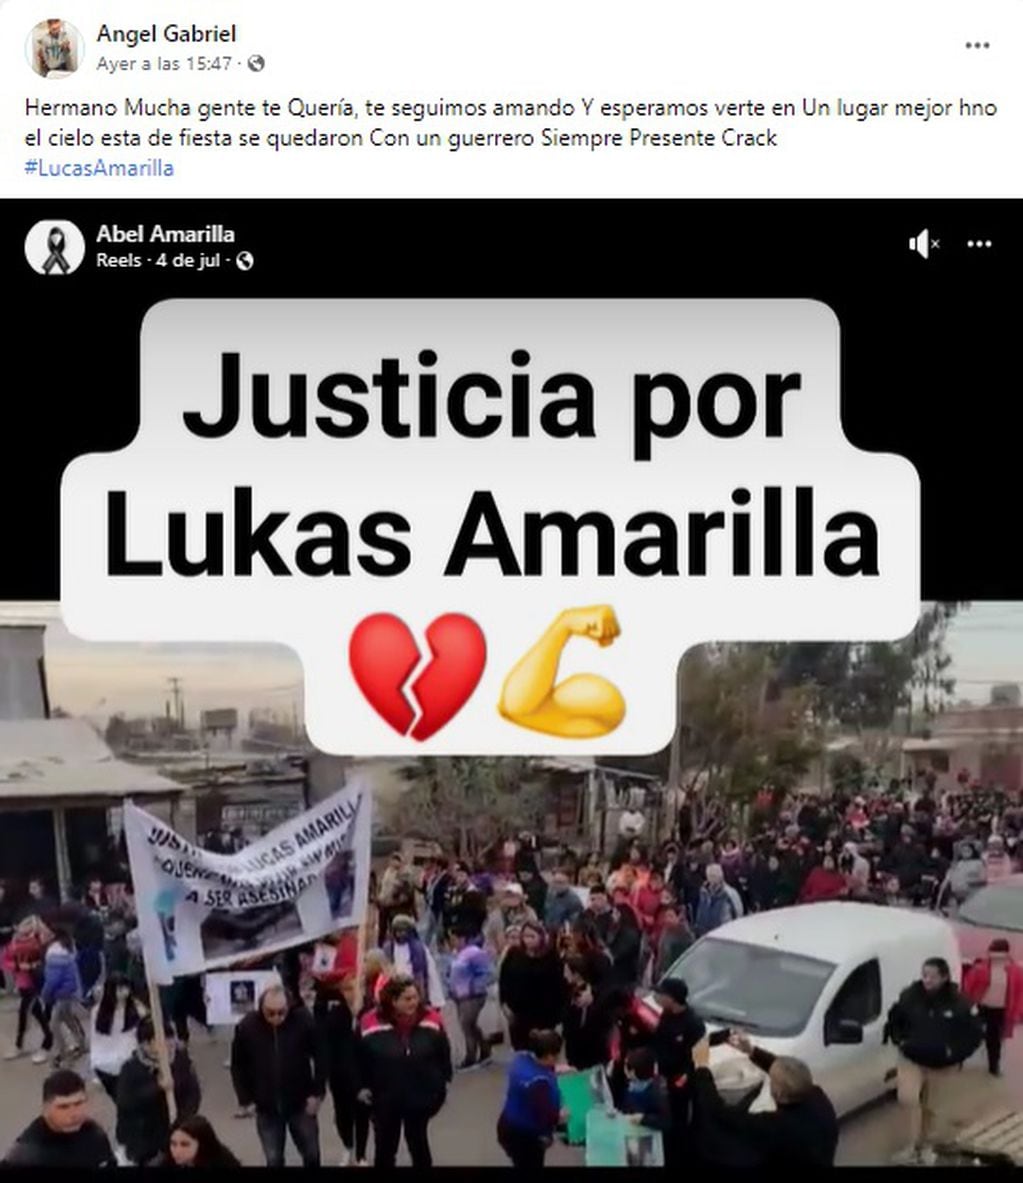 Pedido de justicia por Lucas Amarilla.